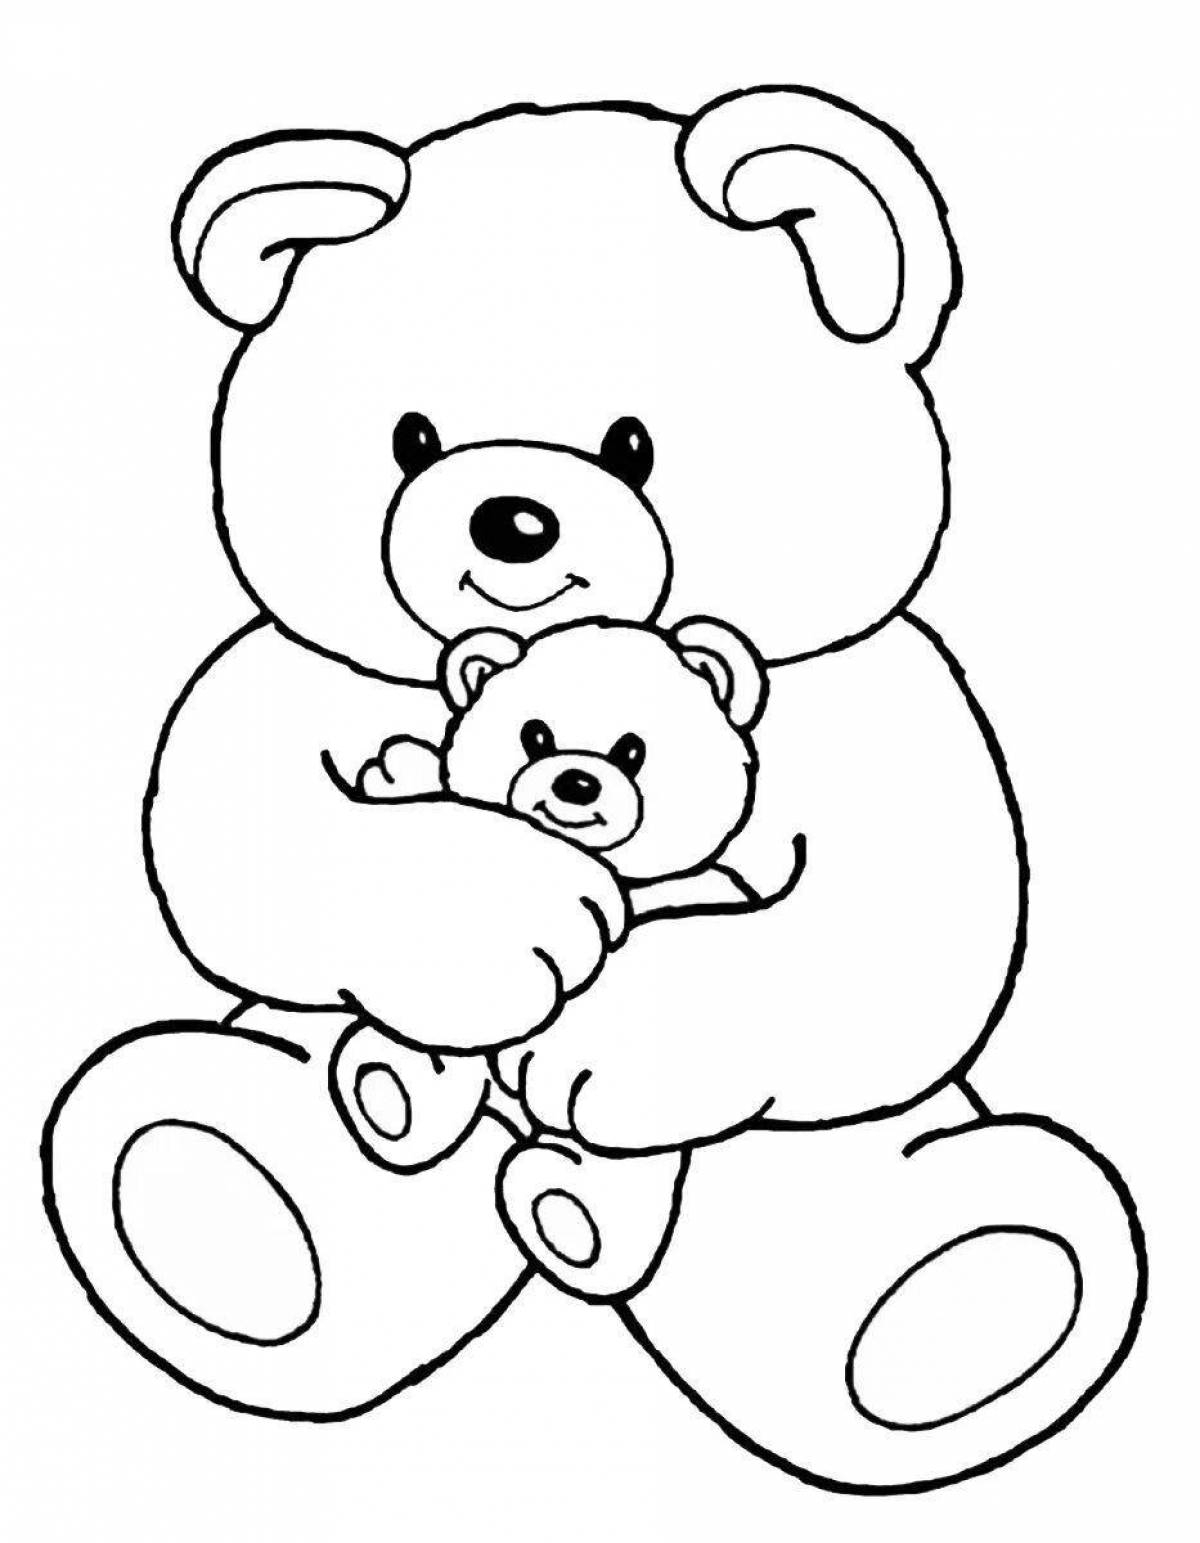 Joyful teddy bear coloring book